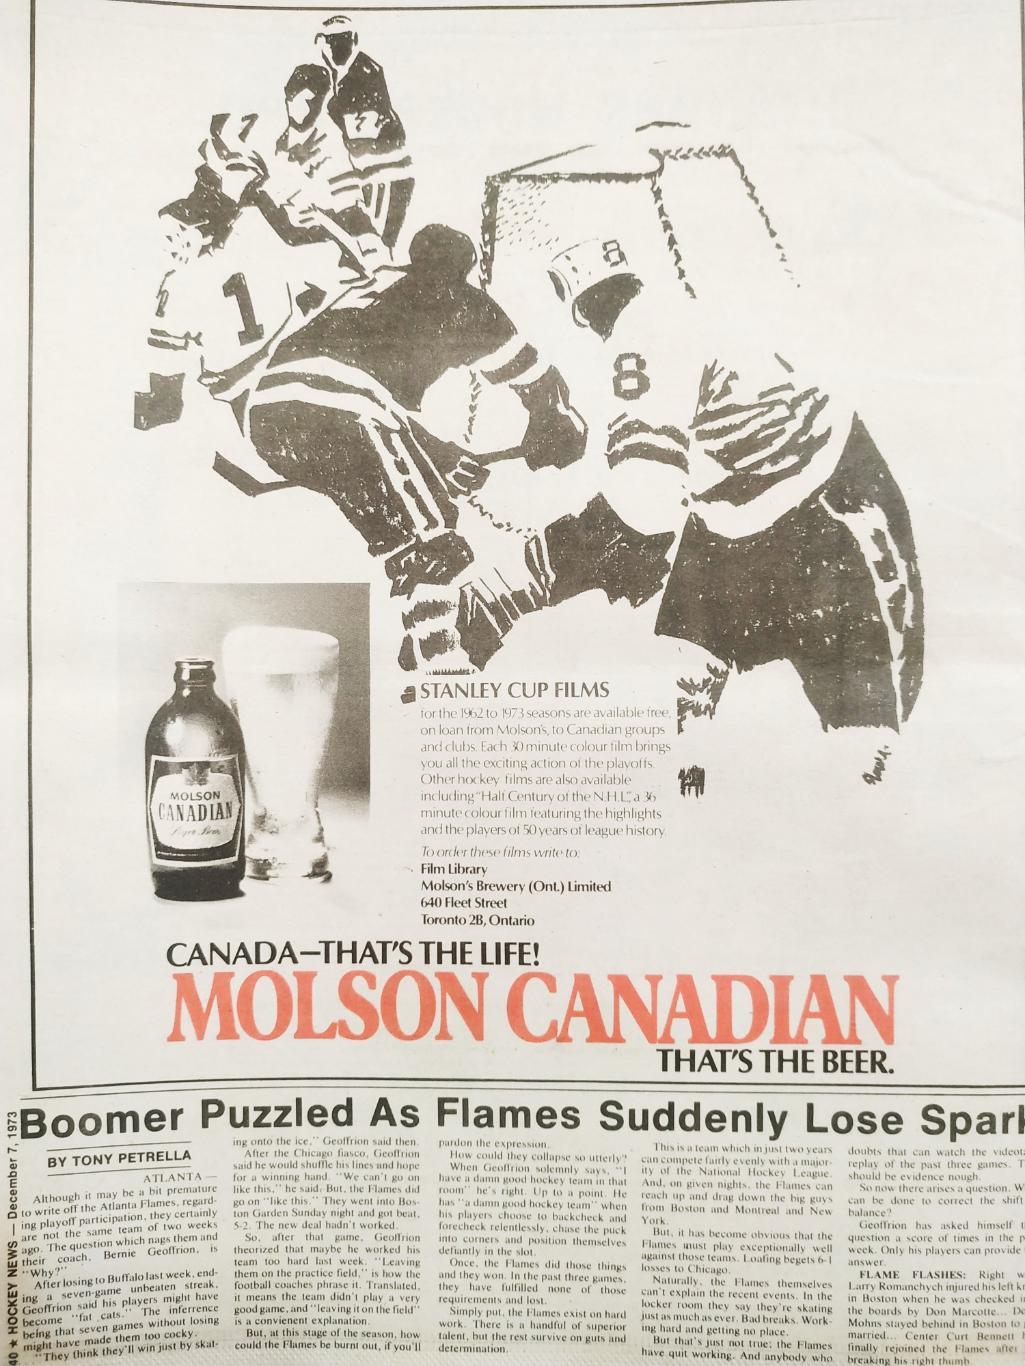 ХОККЕЙ ЖУРНАЛ ЕЖЕНЕДЕЛЬНИК НХЛ НОВОСТИ ХОККЕЯ DEC.7 1973 NHL THE HOCKEY NEWS 7